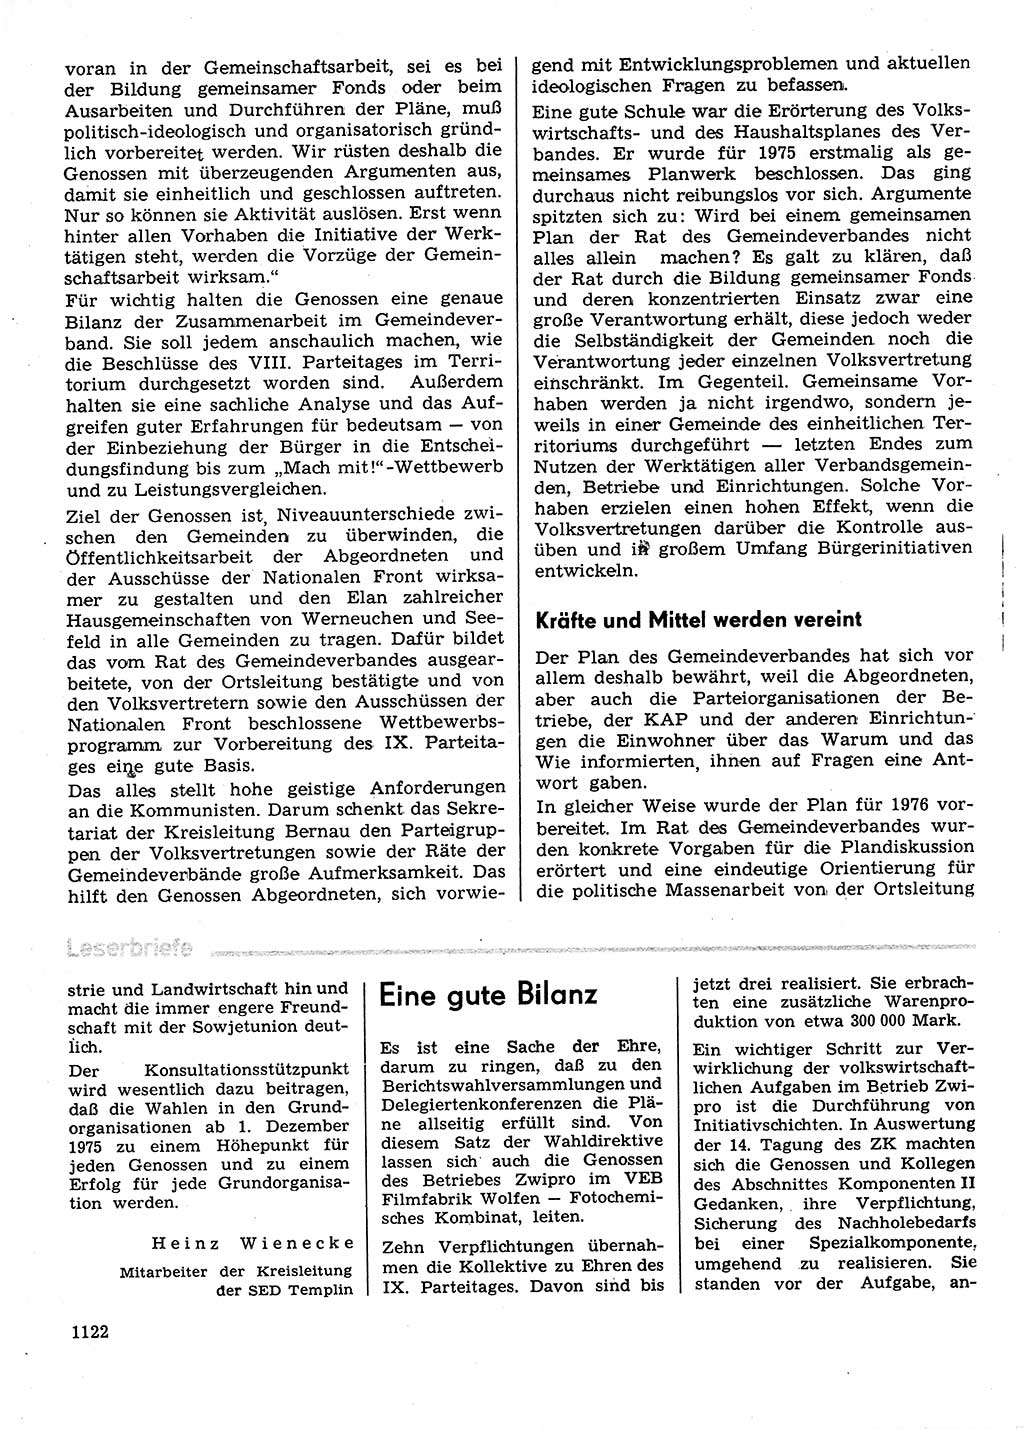 Neuer Weg (NW), Organ des Zentralkomitees (ZK) der SED (Sozialistische Einheitspartei Deutschlands) für Fragen des Parteilebens, 30. Jahrgang [Deutsche Demokratische Republik (DDR)] 1975, Seite 1122 (NW ZK SED DDR 1975, S. 1122)